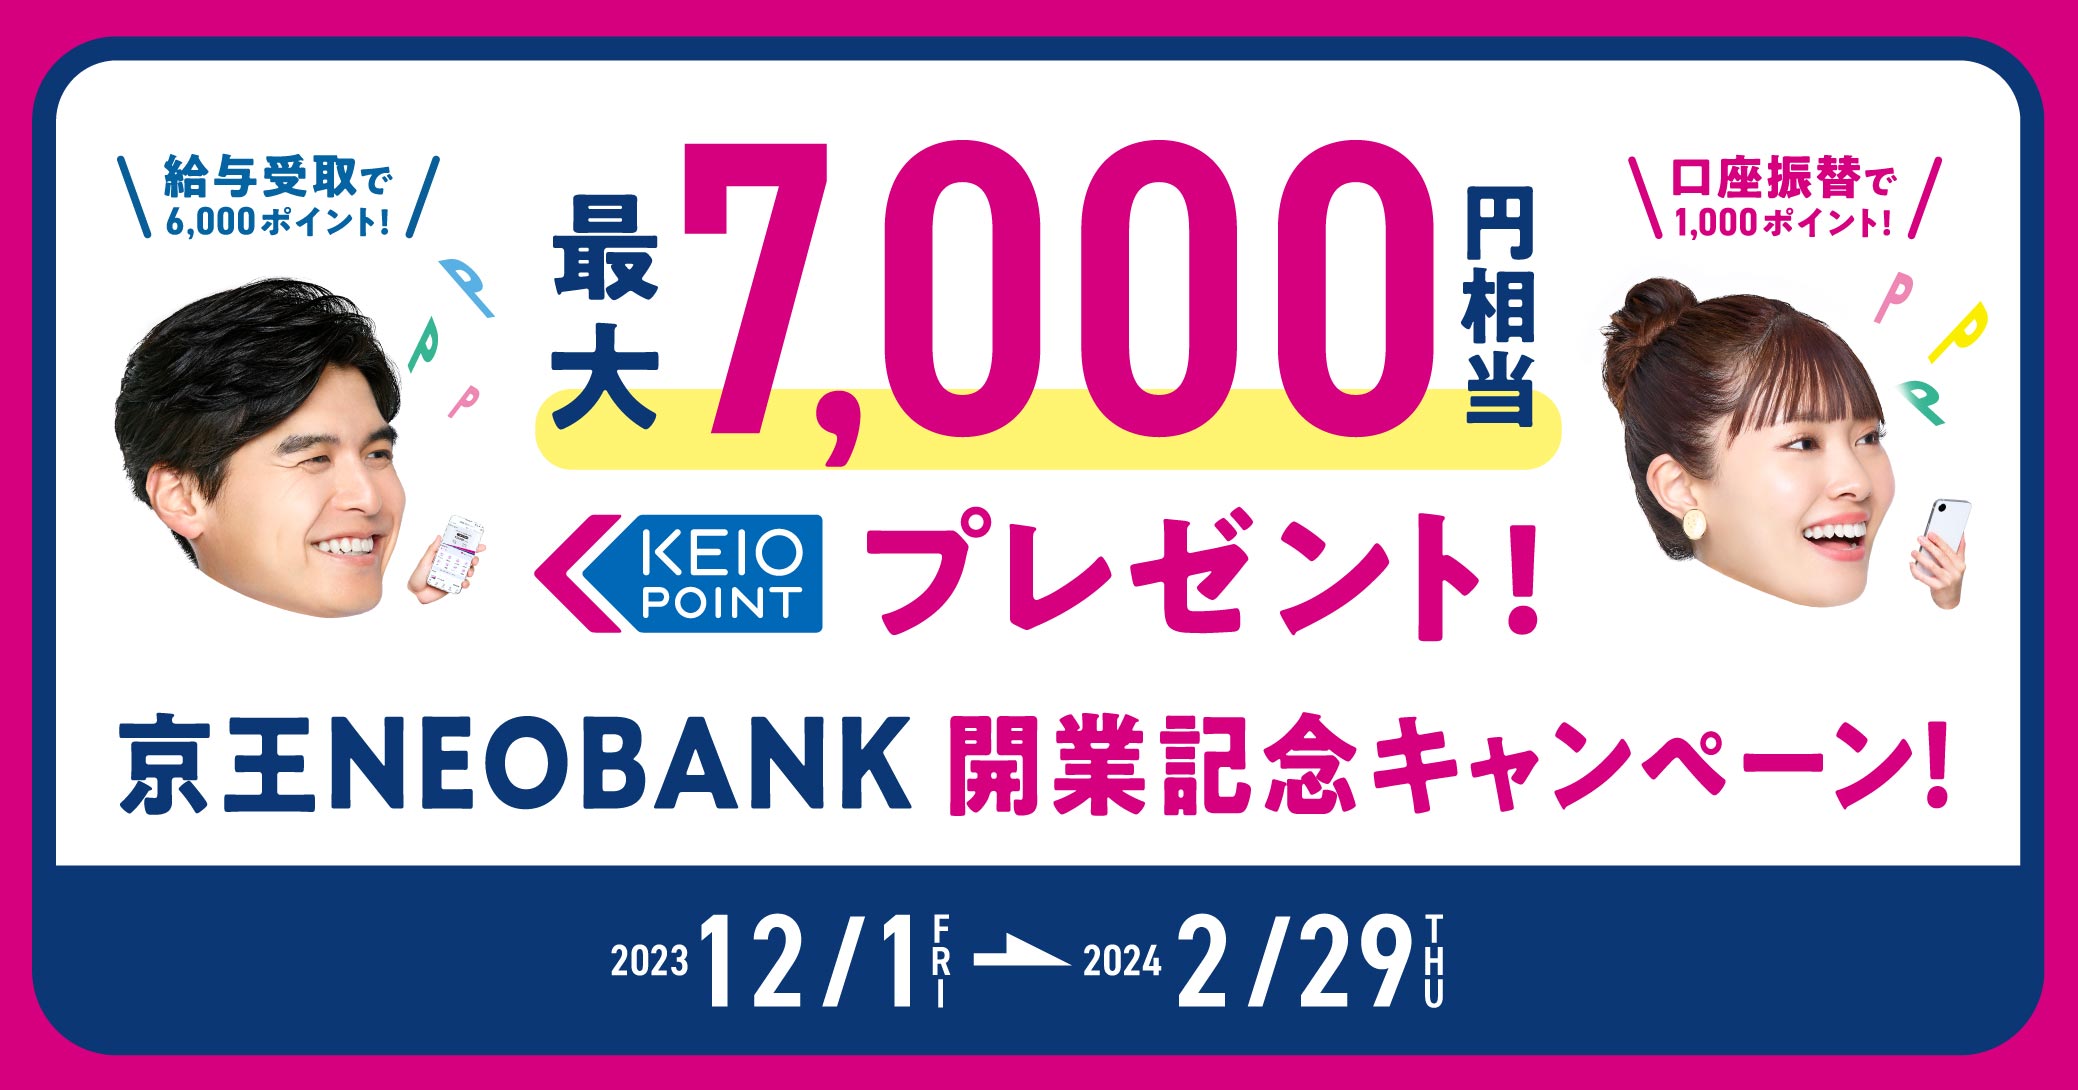 京王 NEOBANK 開業記念キャンペーン イメージ